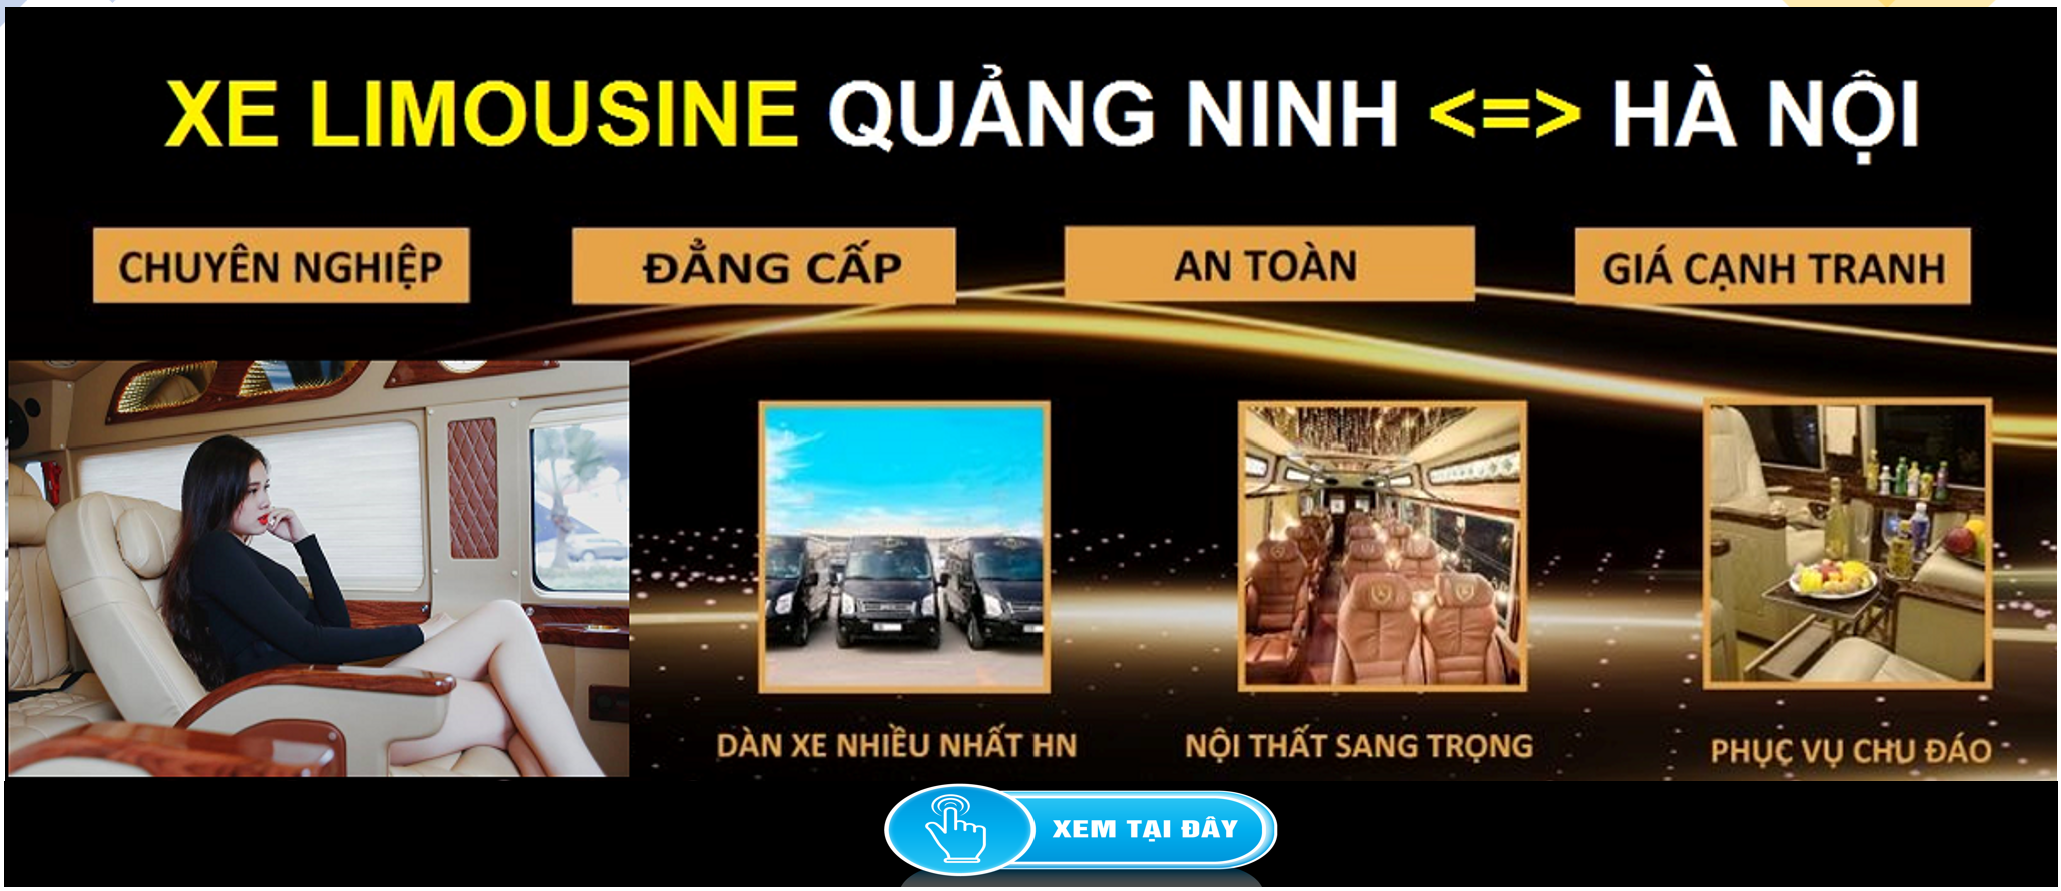 Xe Limousine Ha Noi Quang Ninh dua don tai nha 1d - Lắp độ ghế sau xe Spark Van, Morning Van - giao hàng Toàn Quốc